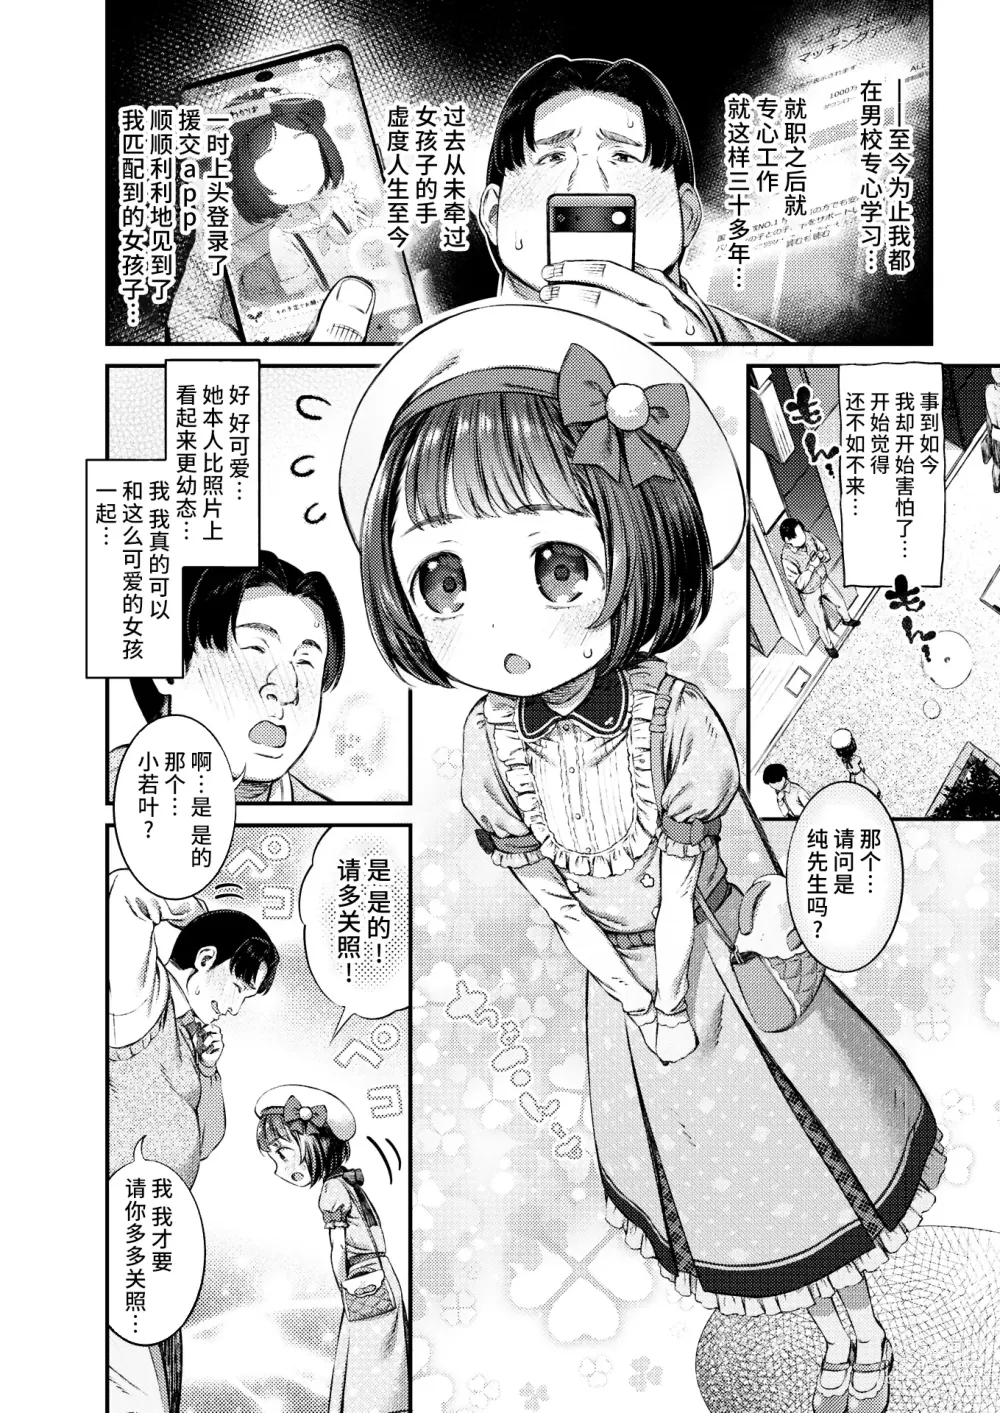 Page 2 of manga Papakatsu ni wa Kiken ga Ippai! - Papa Sex with Dangerous Girl